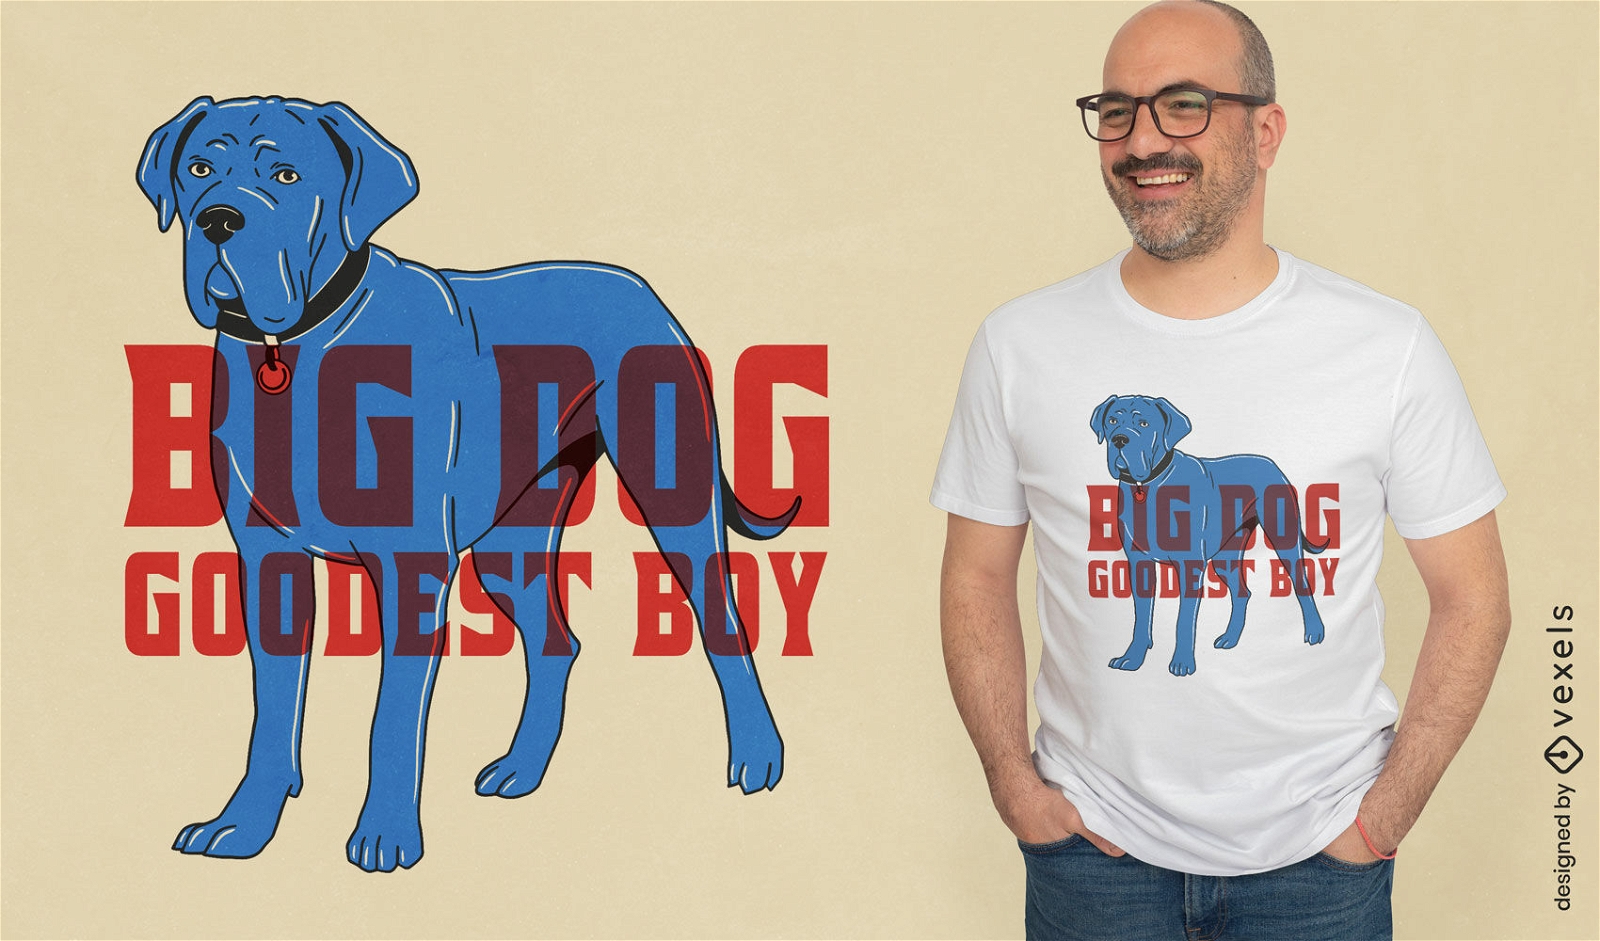 Big dog, goodest boy dog t-shirt design